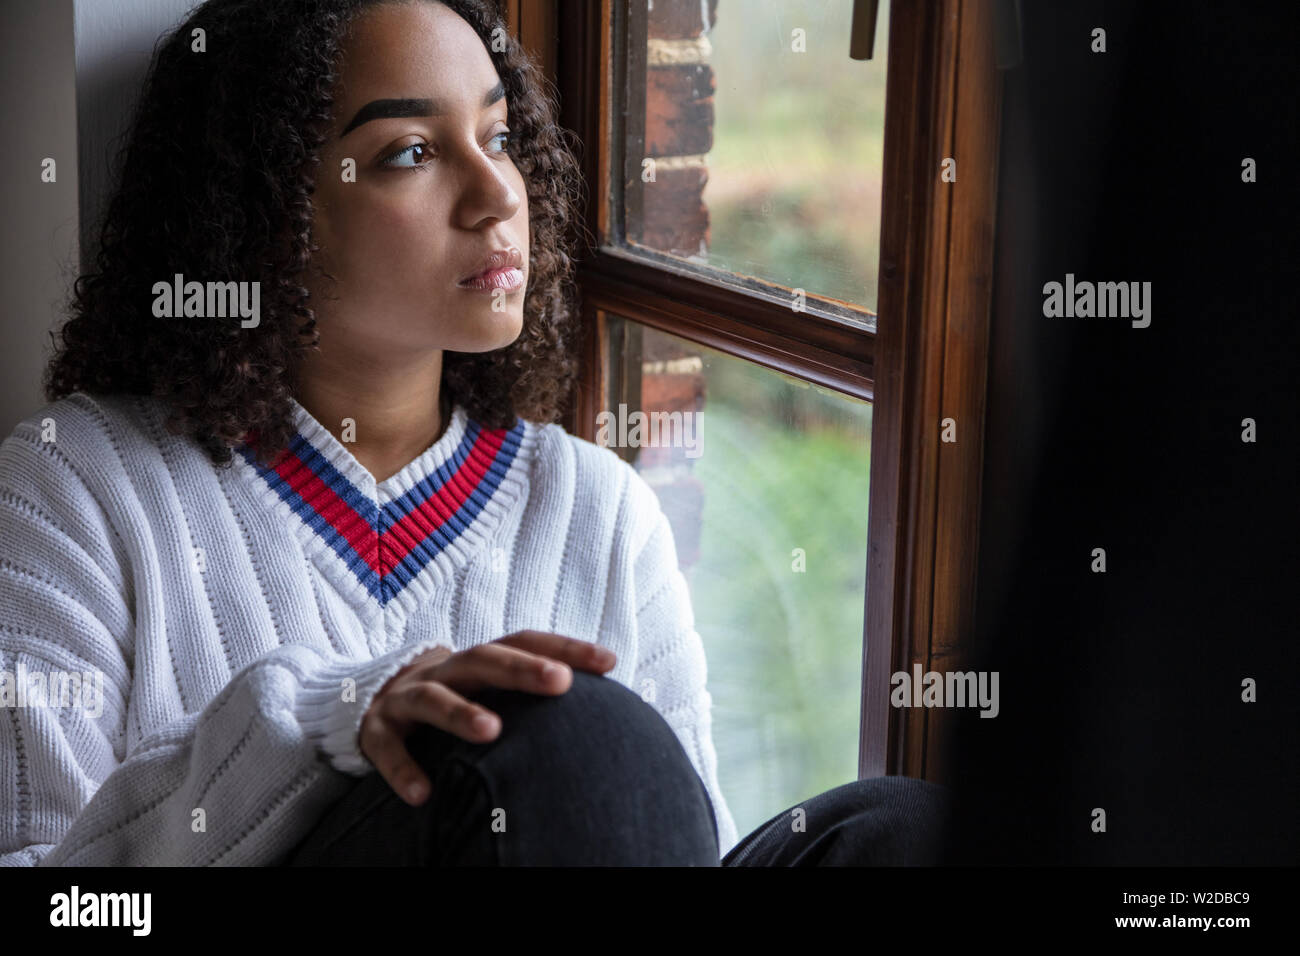 Bellissima gara di misto biracial americano africano ragazza adolescente di sesso femminile donna giovane triste premuto o pensieroso guardando fuori della finestra Foto Stock